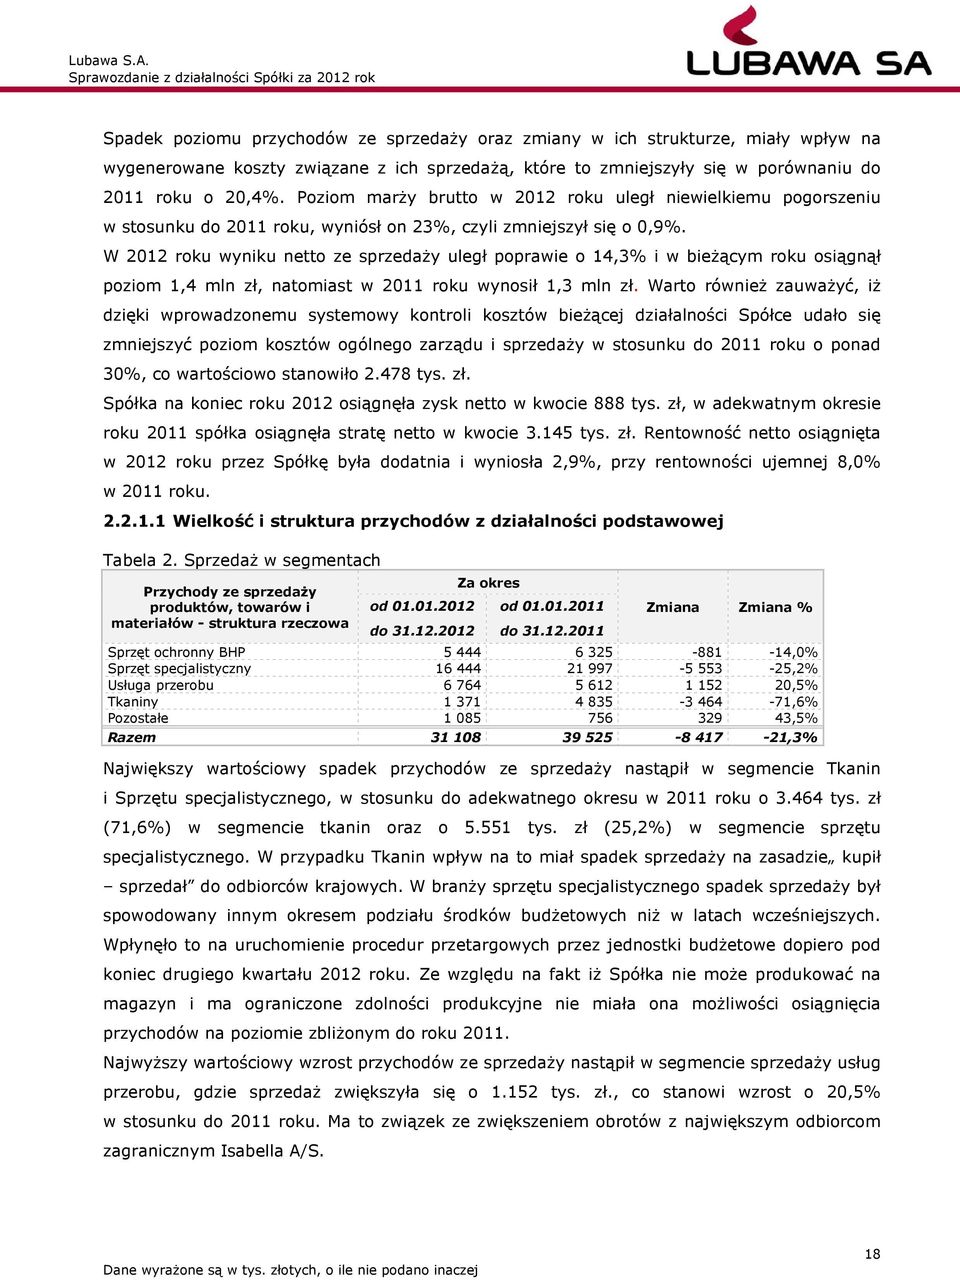 W 2012 roku wyniku netto ze sprzedaży uległ poprawie o 14,3% i w bieżącym roku osiągnął poziom 1,4 mln zł, natomiast w 2011 roku wynosił 1,3 mln zł.